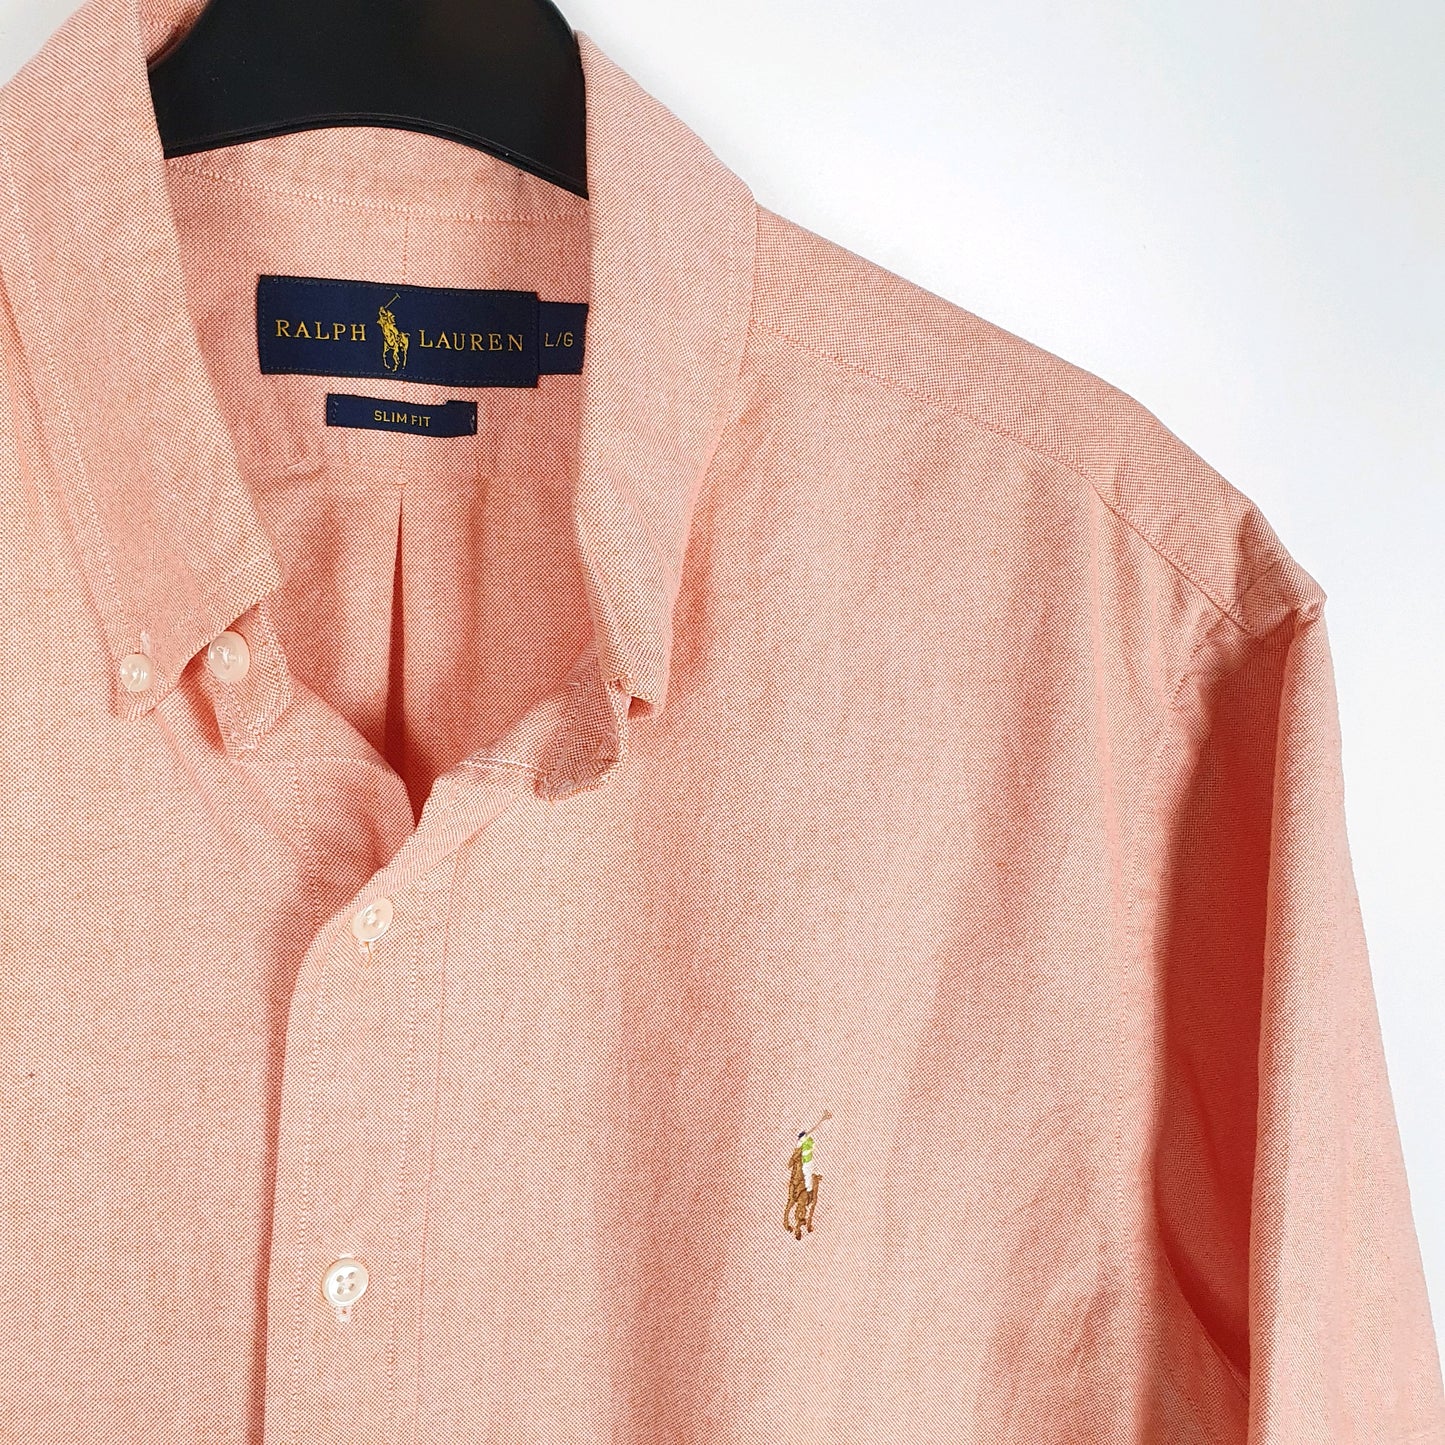 Polo Ralph Lauren Short Sleeve Slim Fit Shirt